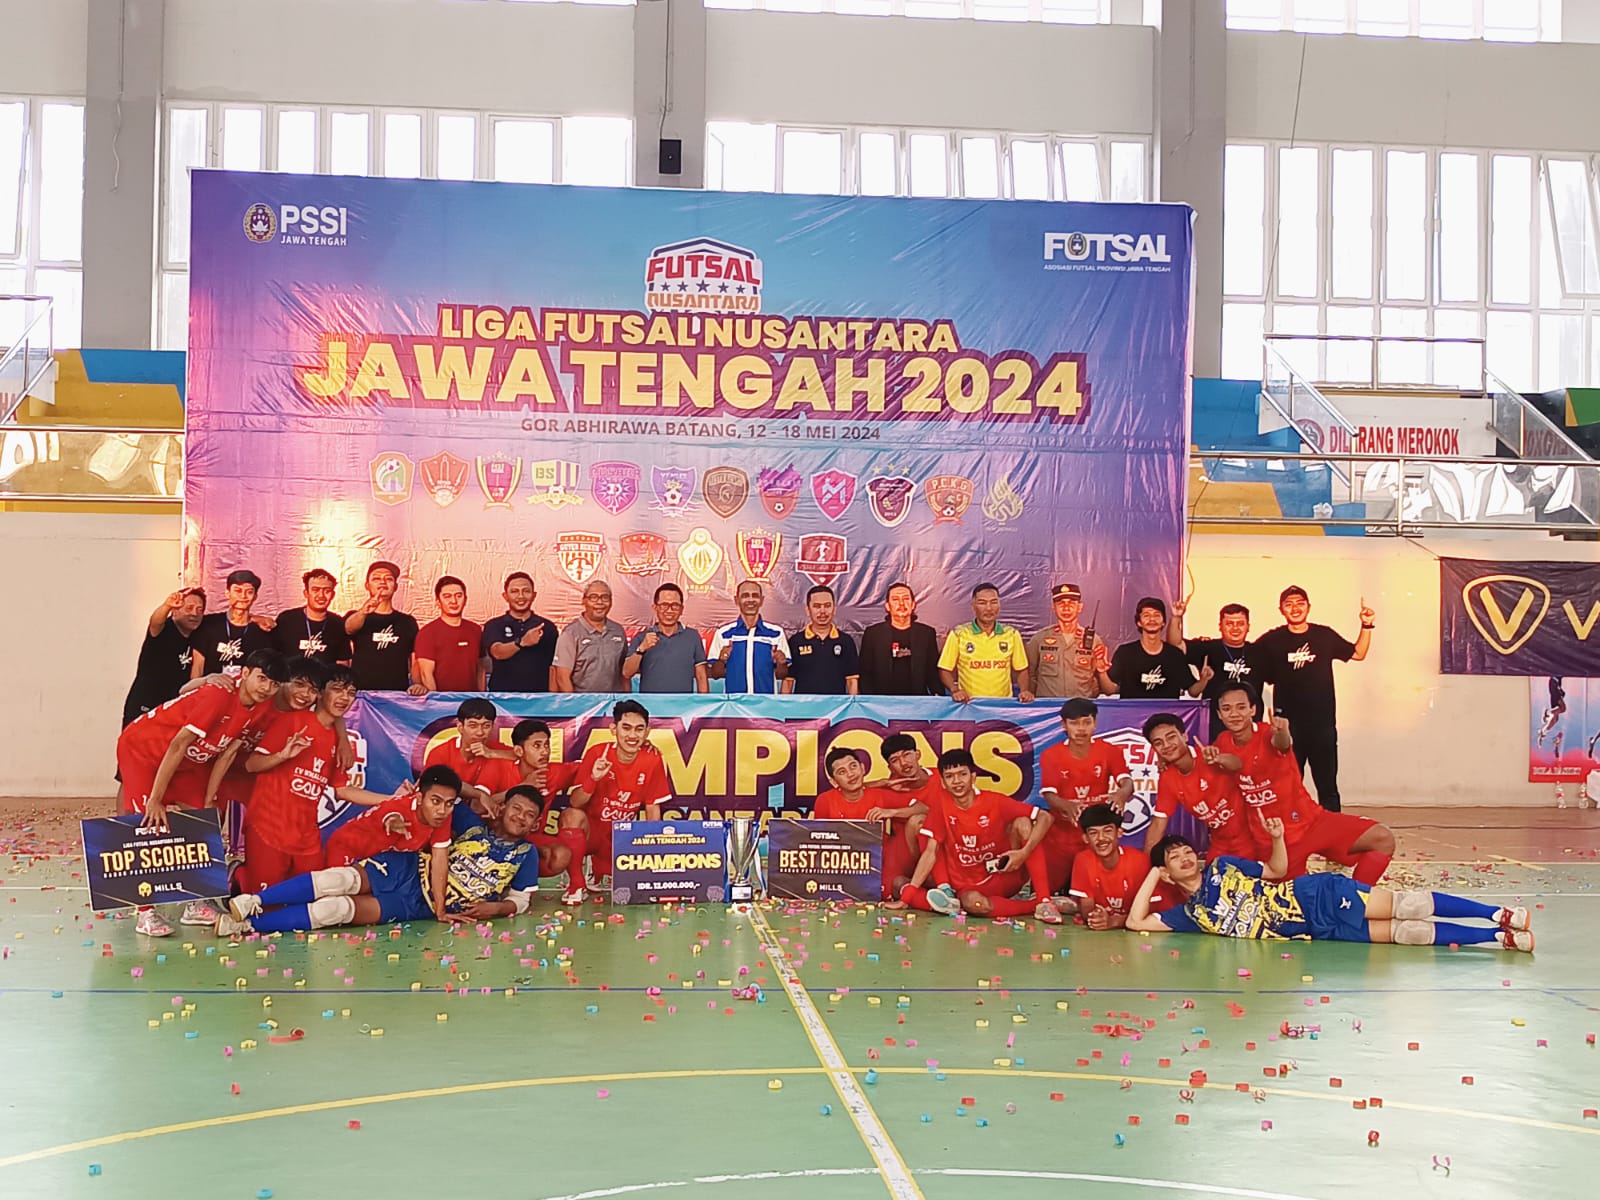 Futsal Kota Surakarta dan F4ST Angels Semarang Juarai Liga Futsal Nusantara Jawa Tengah 2024